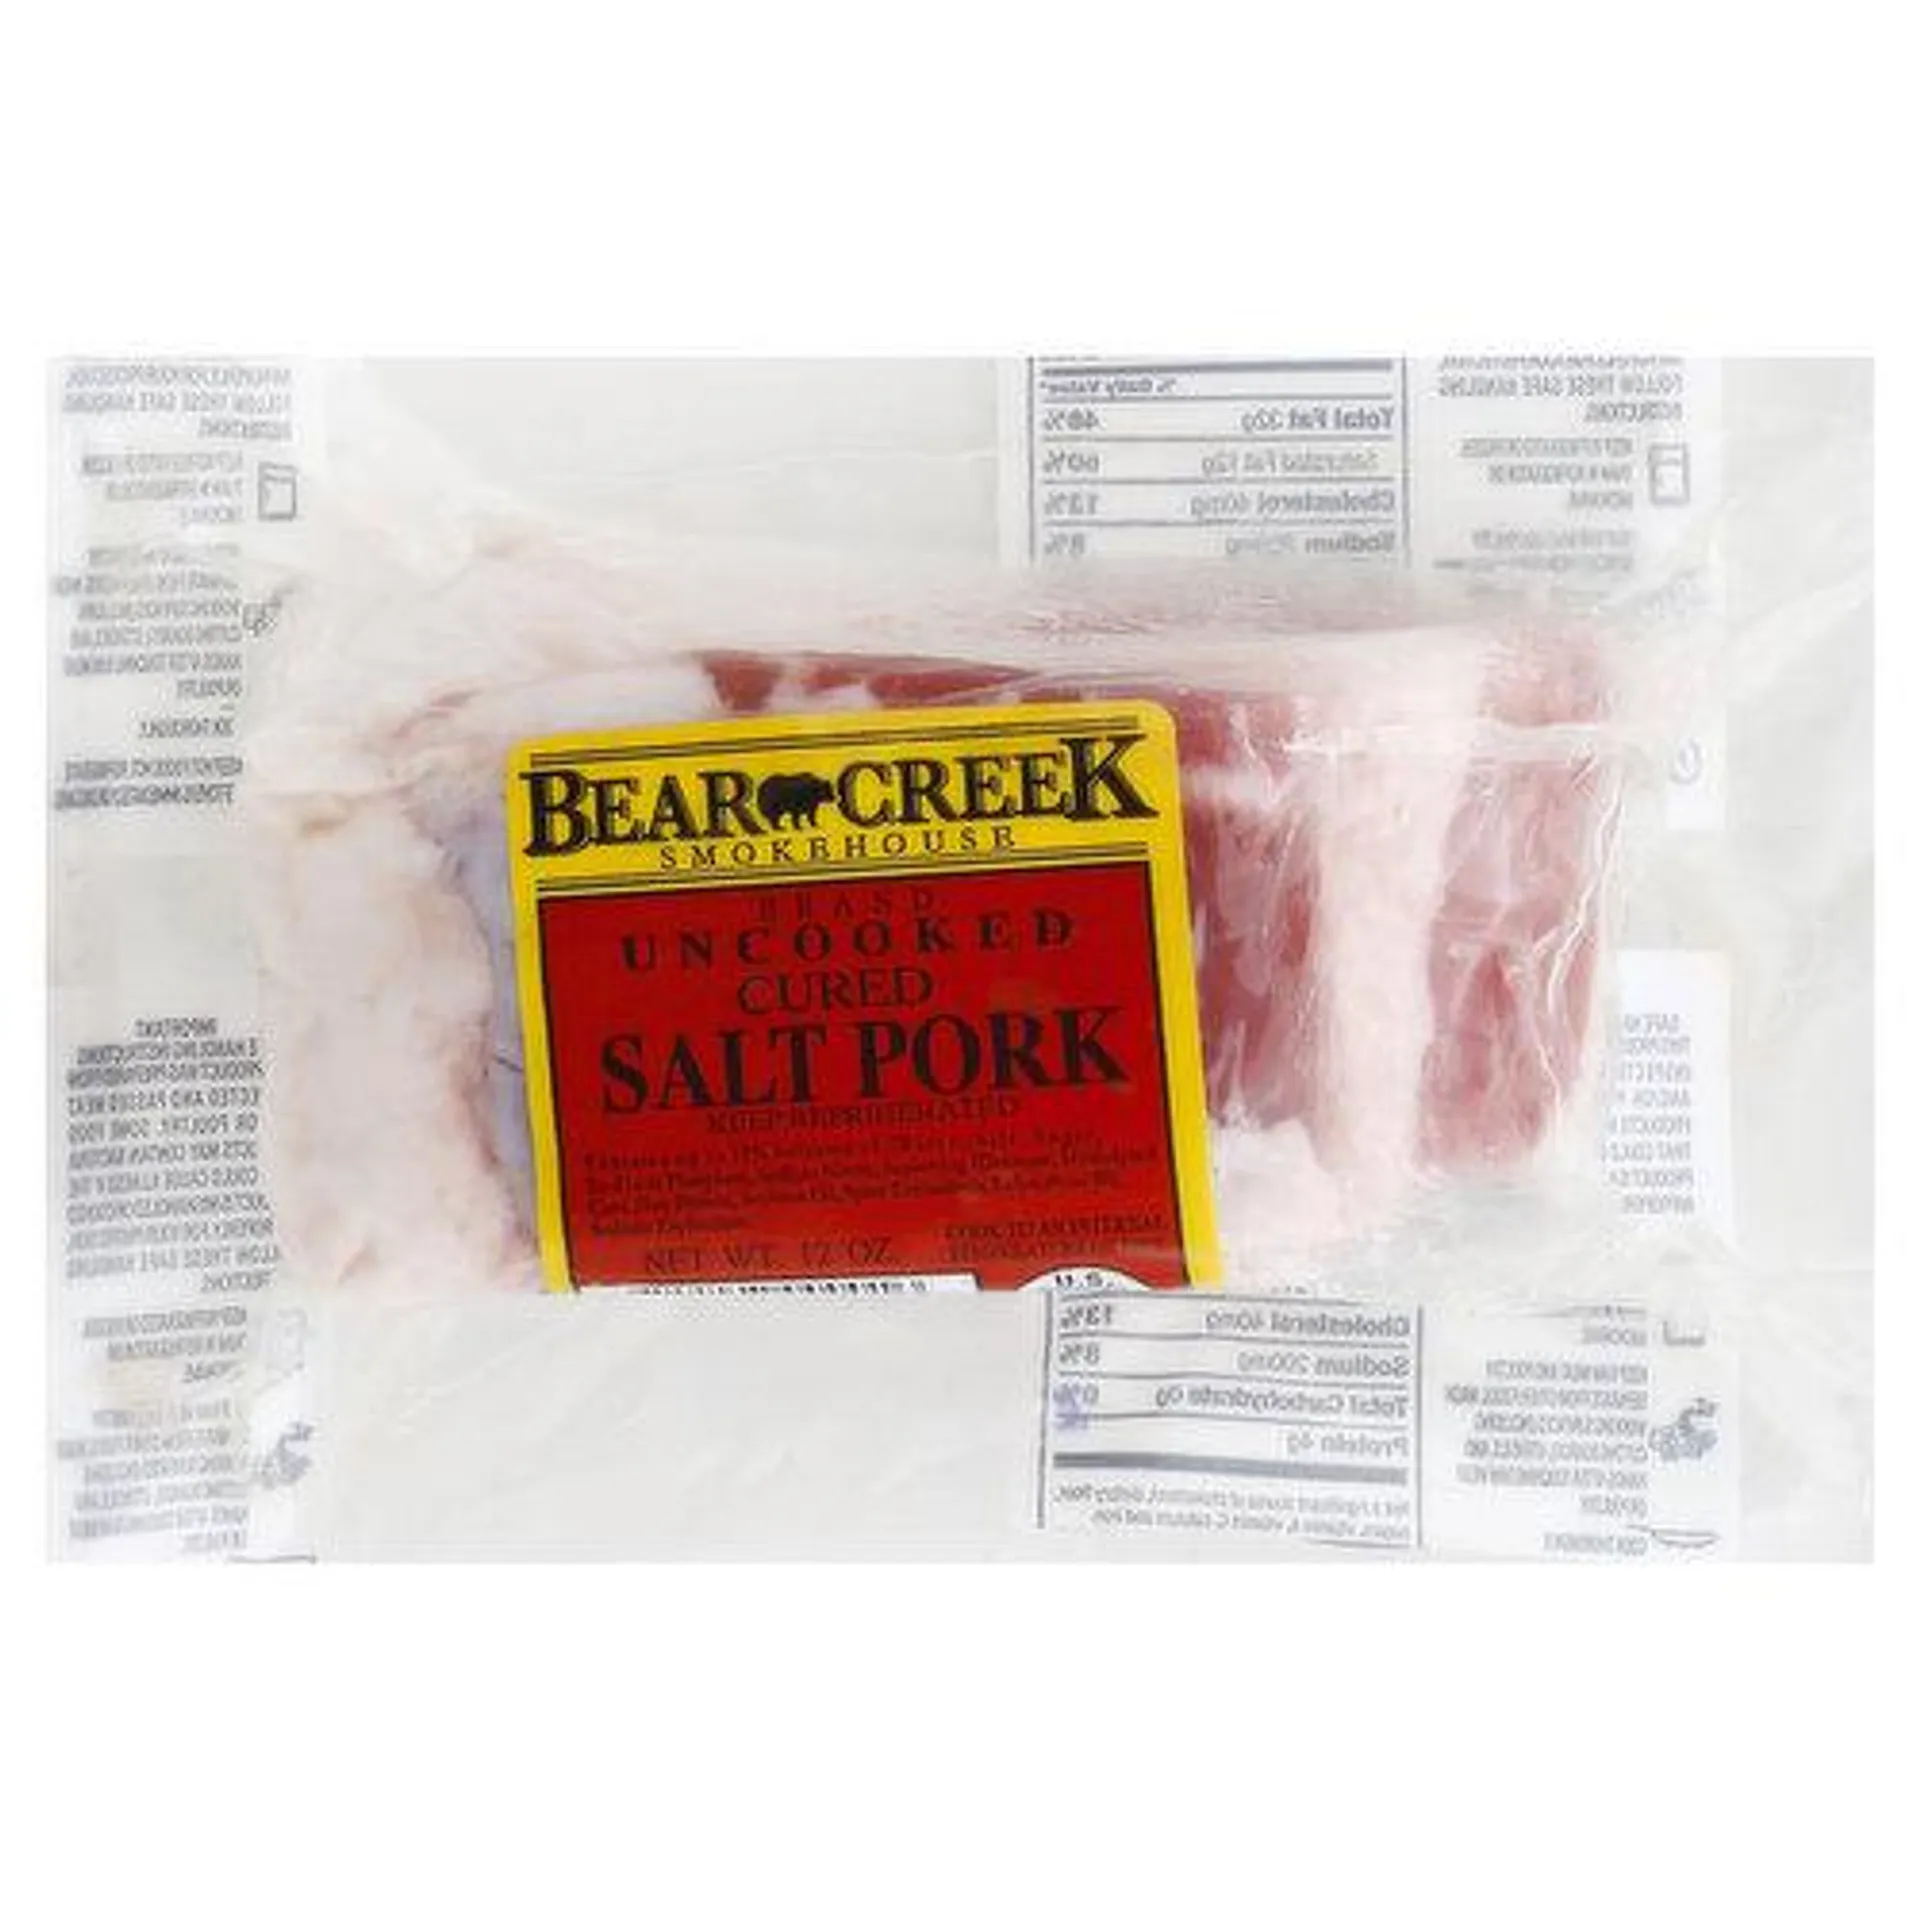 BEAR CREEK Pork, Salted, Cured - 12 Ounce